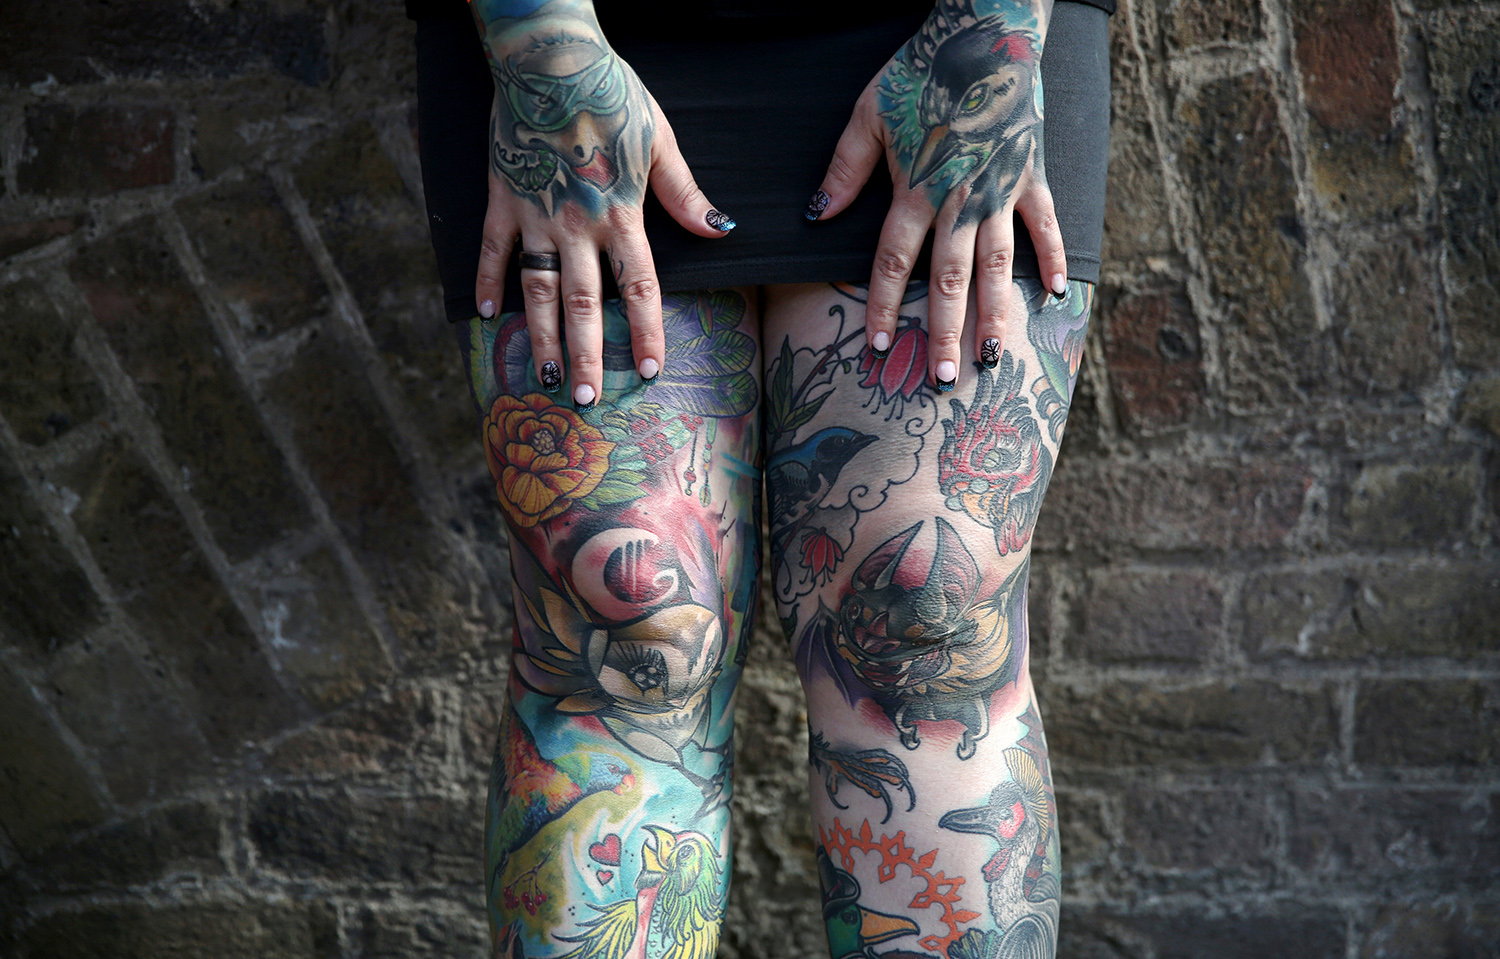 Europa alerta de que la tinta de los tatuajes podría ser cancerígena